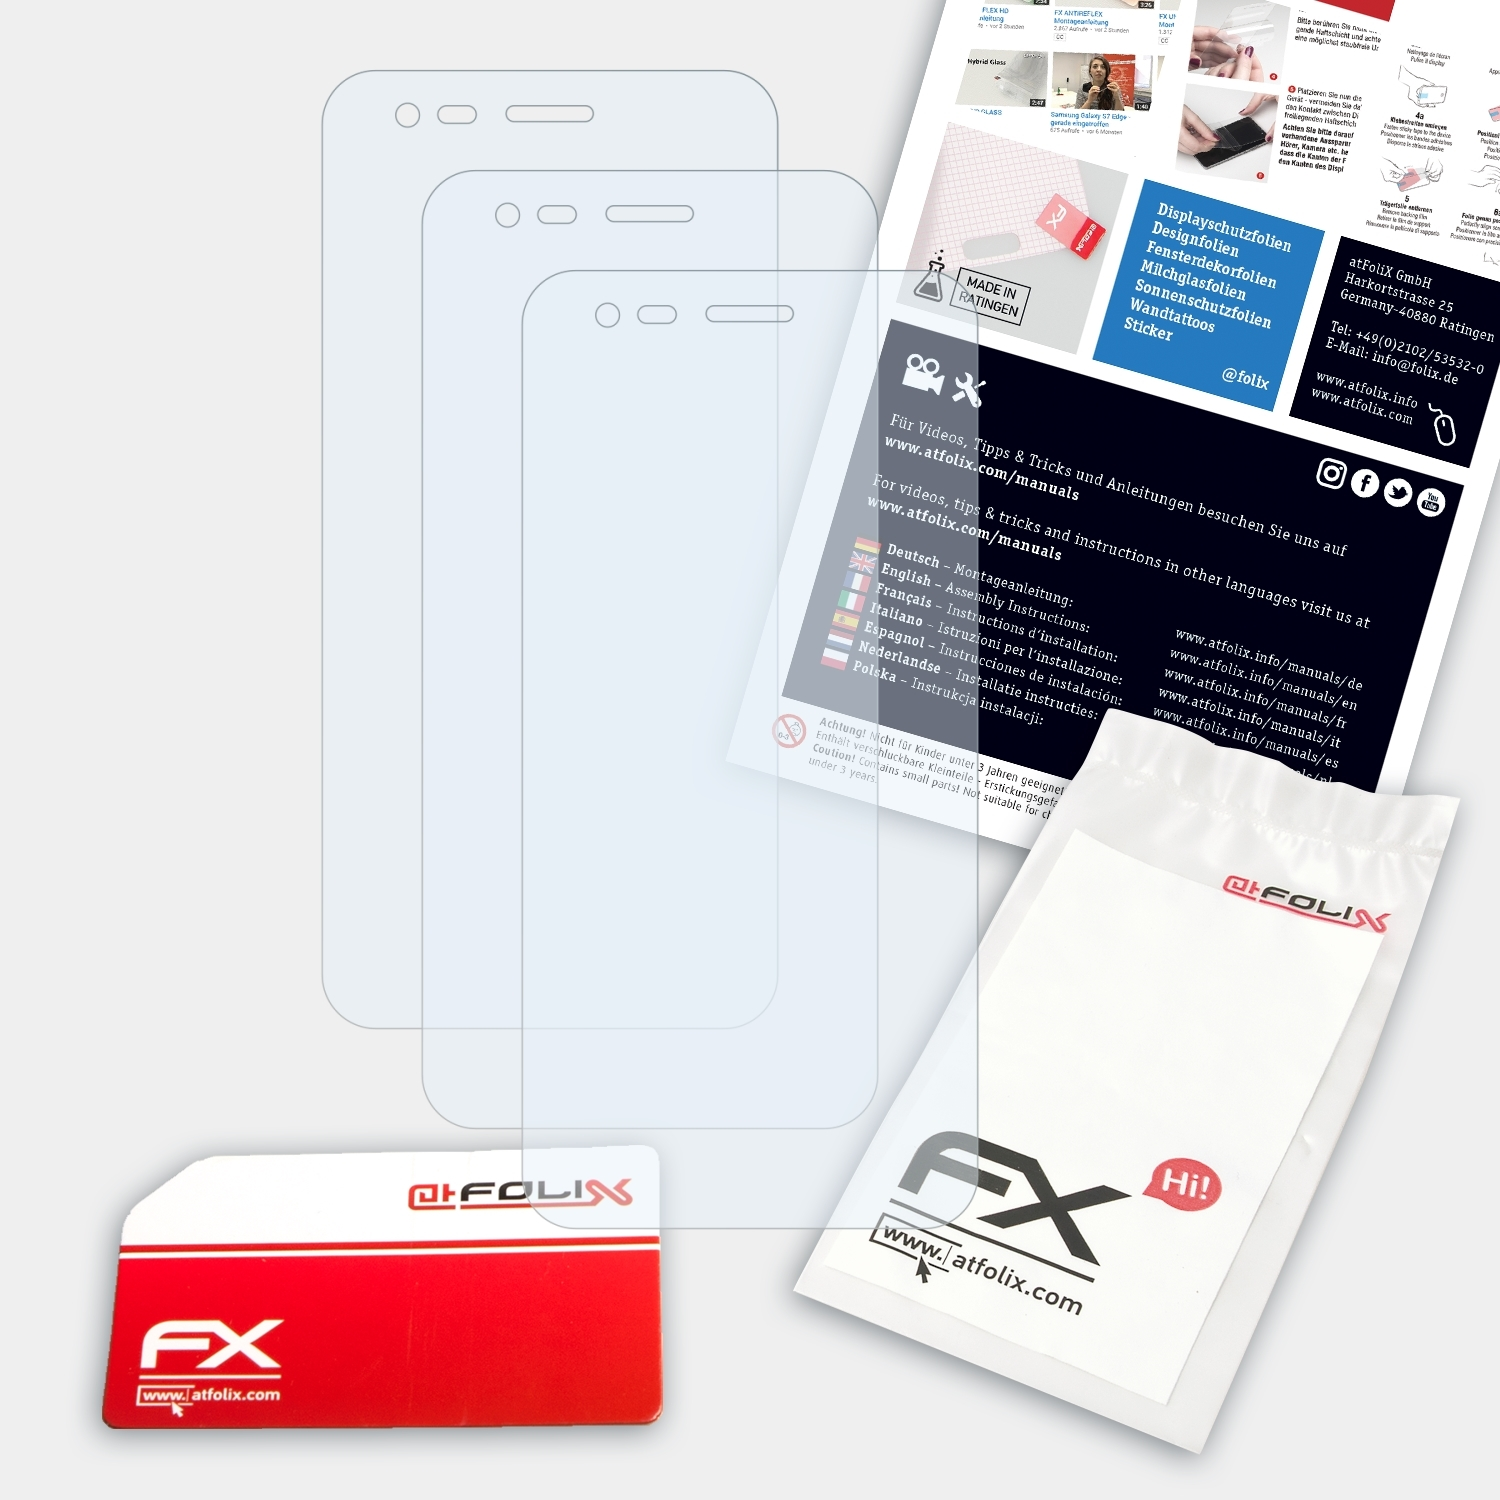 ATFOLIX 3x Displayschutz(für X100) Phicomm FX-Clear